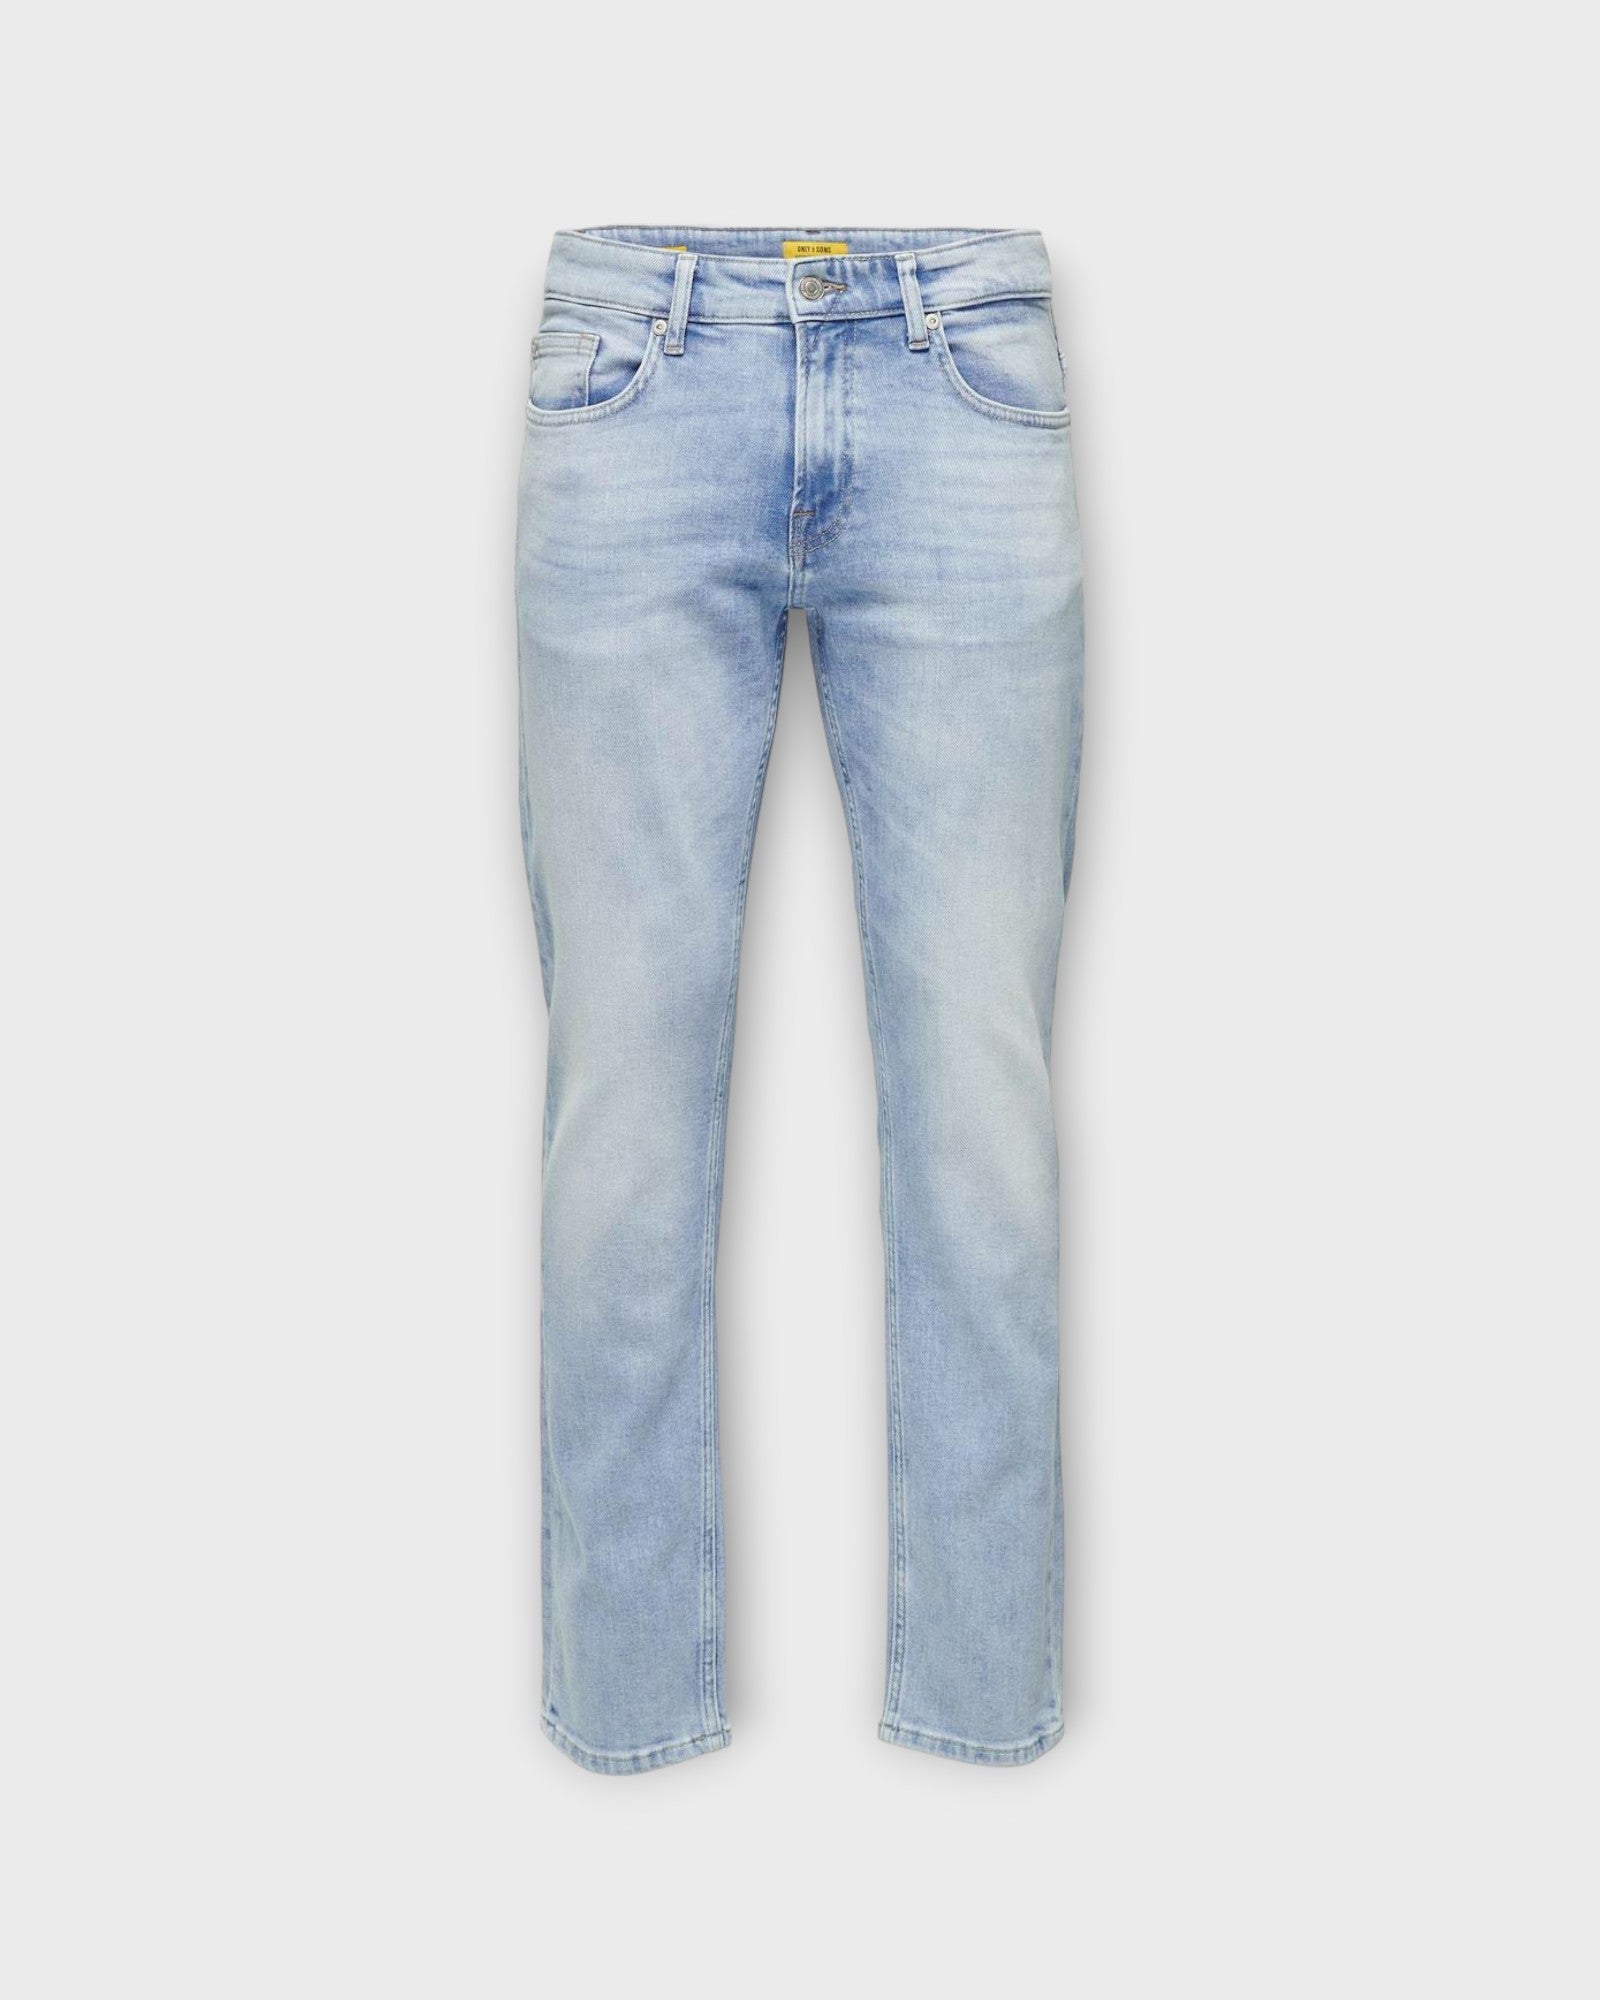 Weft Reg LB 4873 Light Blue Denim fra Only and Sons. Lyseblå forvasket regular fit jeans til mænd. Her set forfra.